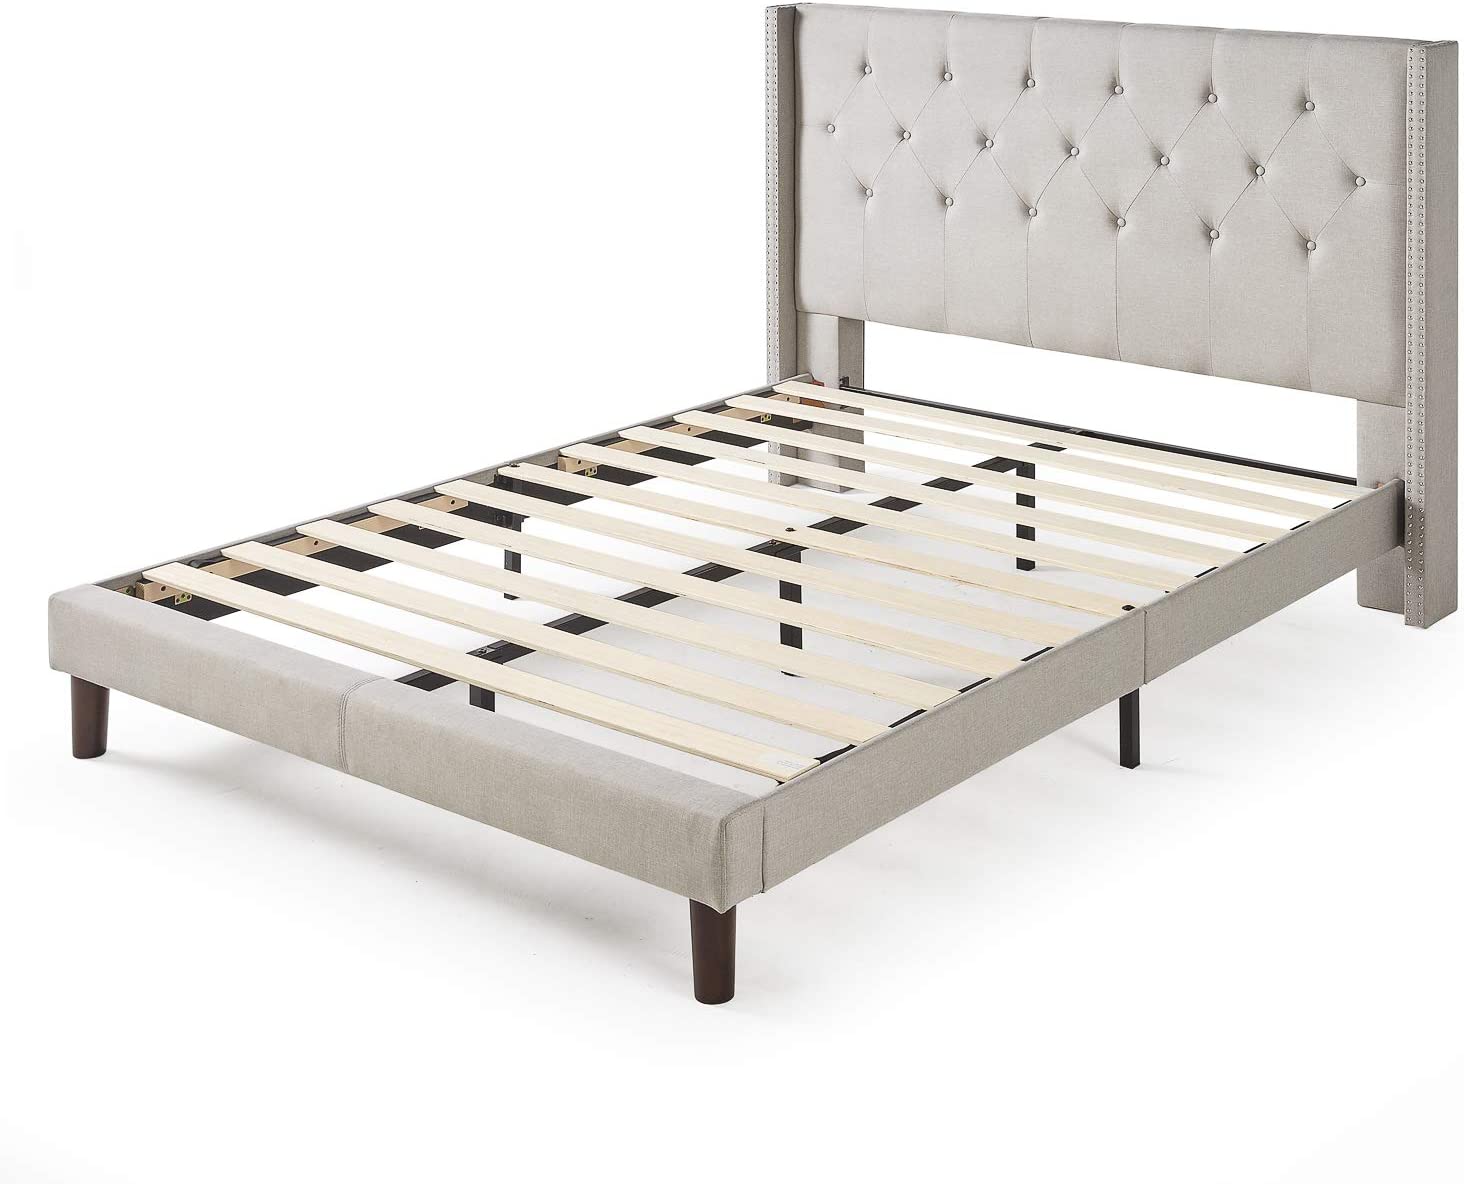 ZINUS Annette Upholstered Platform Bed Frame, Light Gray